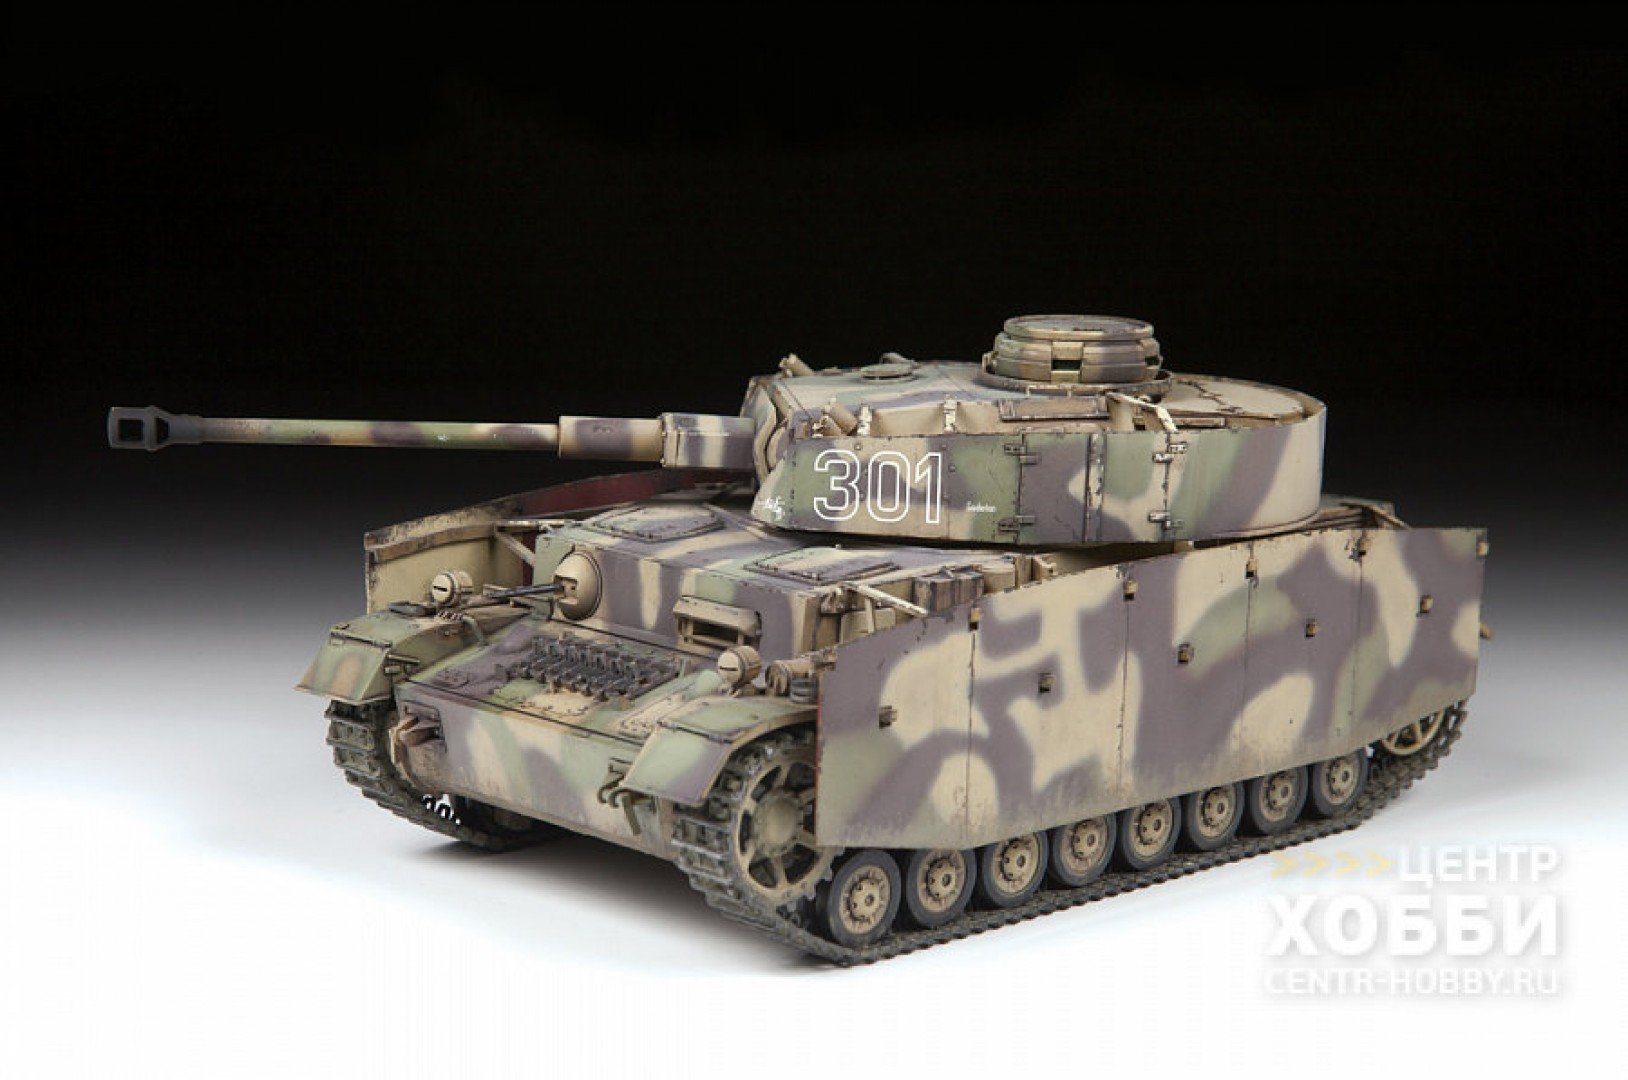 Немецкий средний танк. 3674 Немецкий танк "t-IV G". PZ 4 Ausf g. Звезда 3674 т-IV G. PZ 4 Ausf g модель.